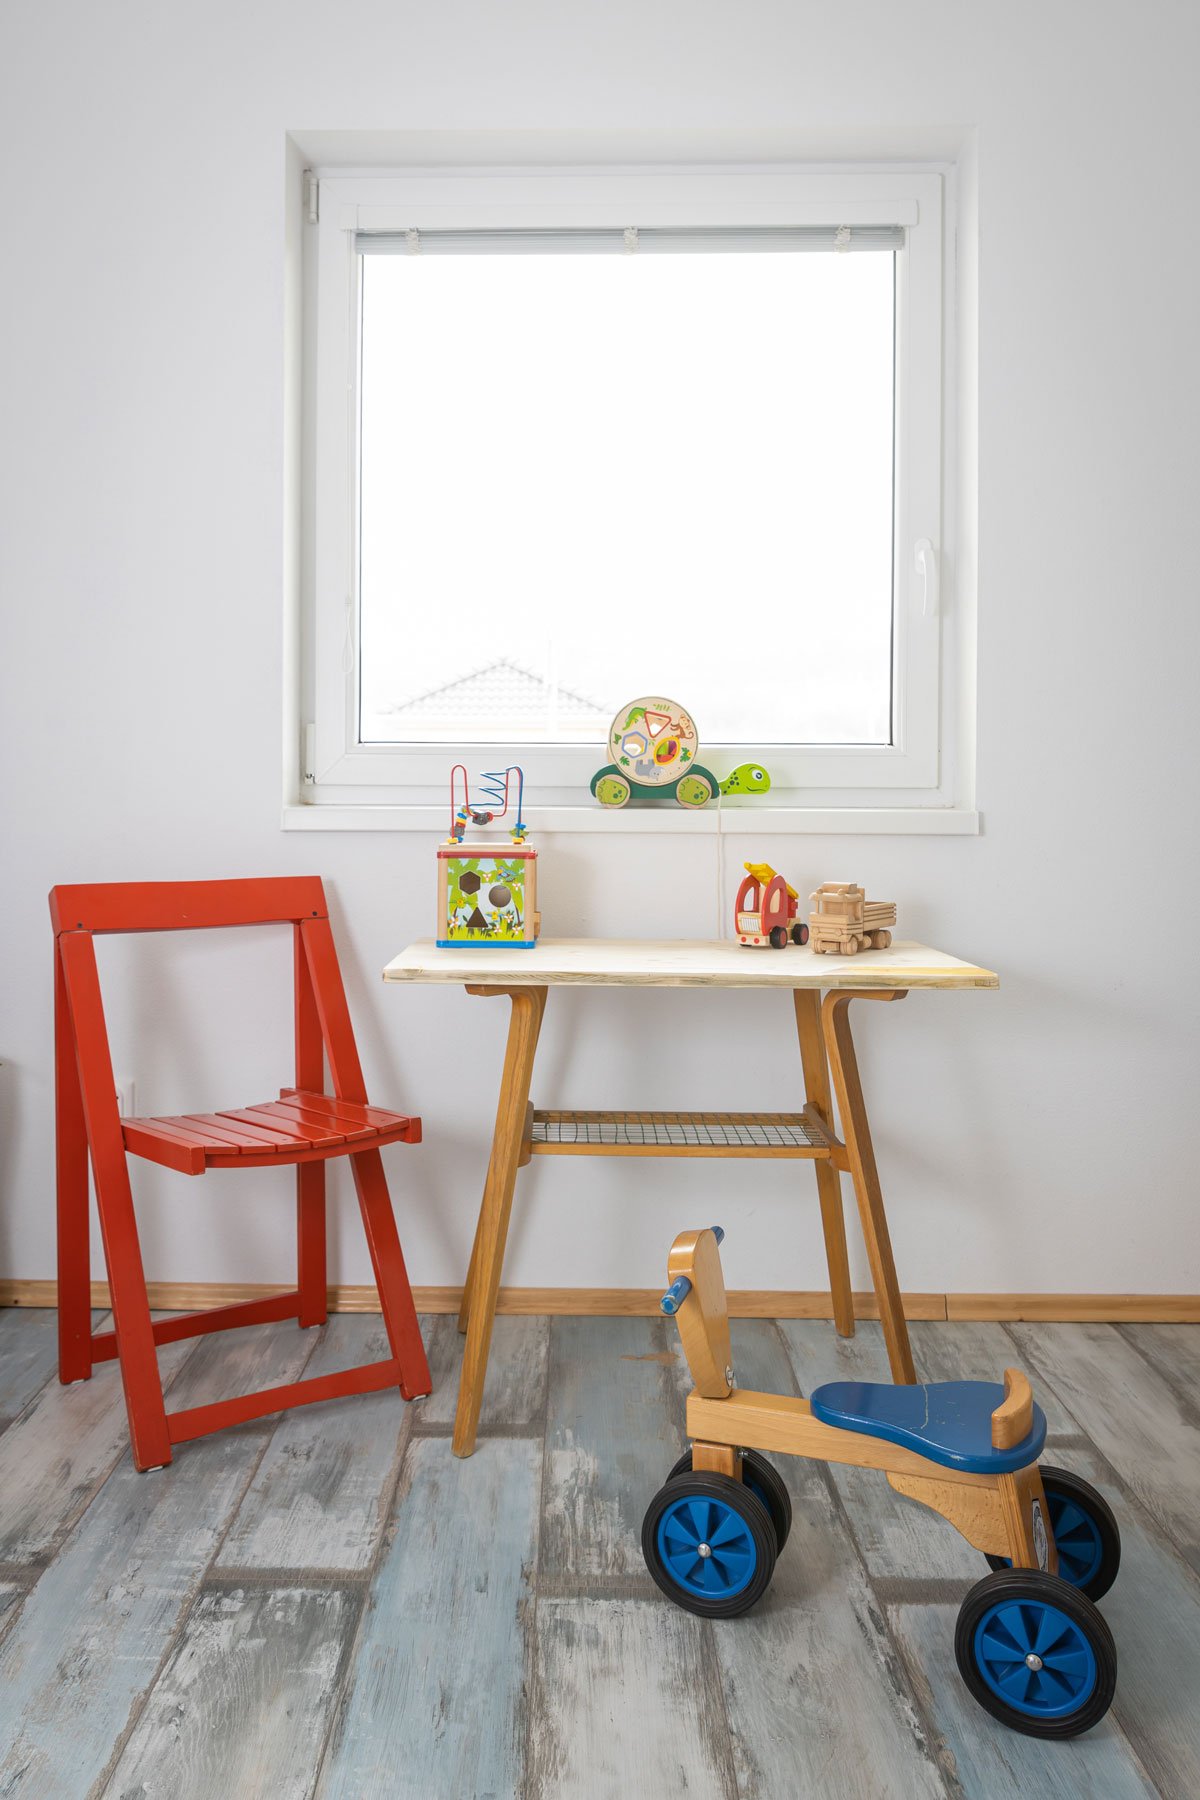 dětský pokoj s recyklovaným stolkem od babičky a dřevěnou skládací žídlí